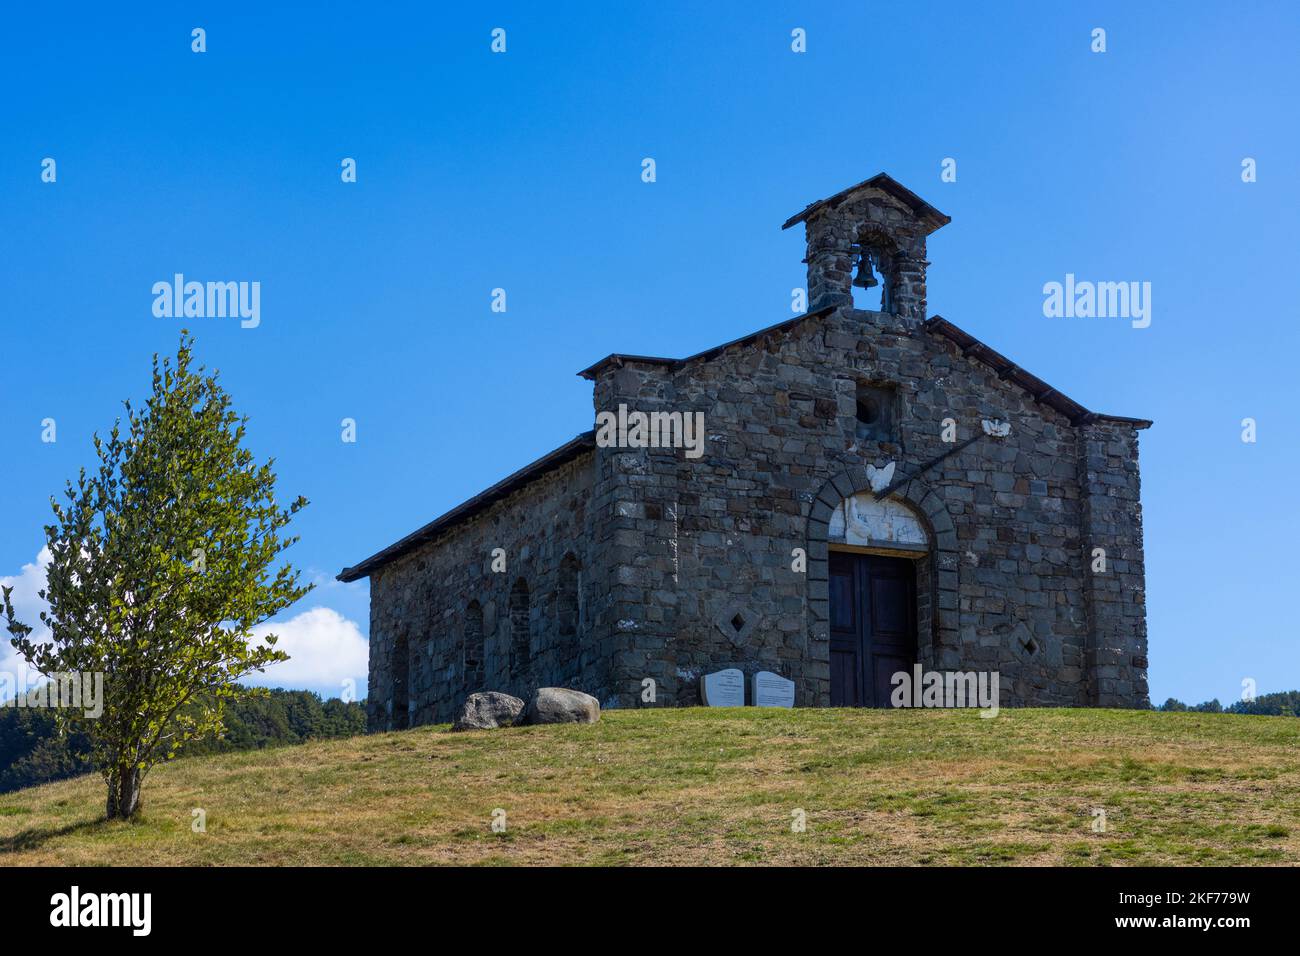 Collines autour de l'église de la Madonna del Orsaro, Parme, Italie Banque D'Images